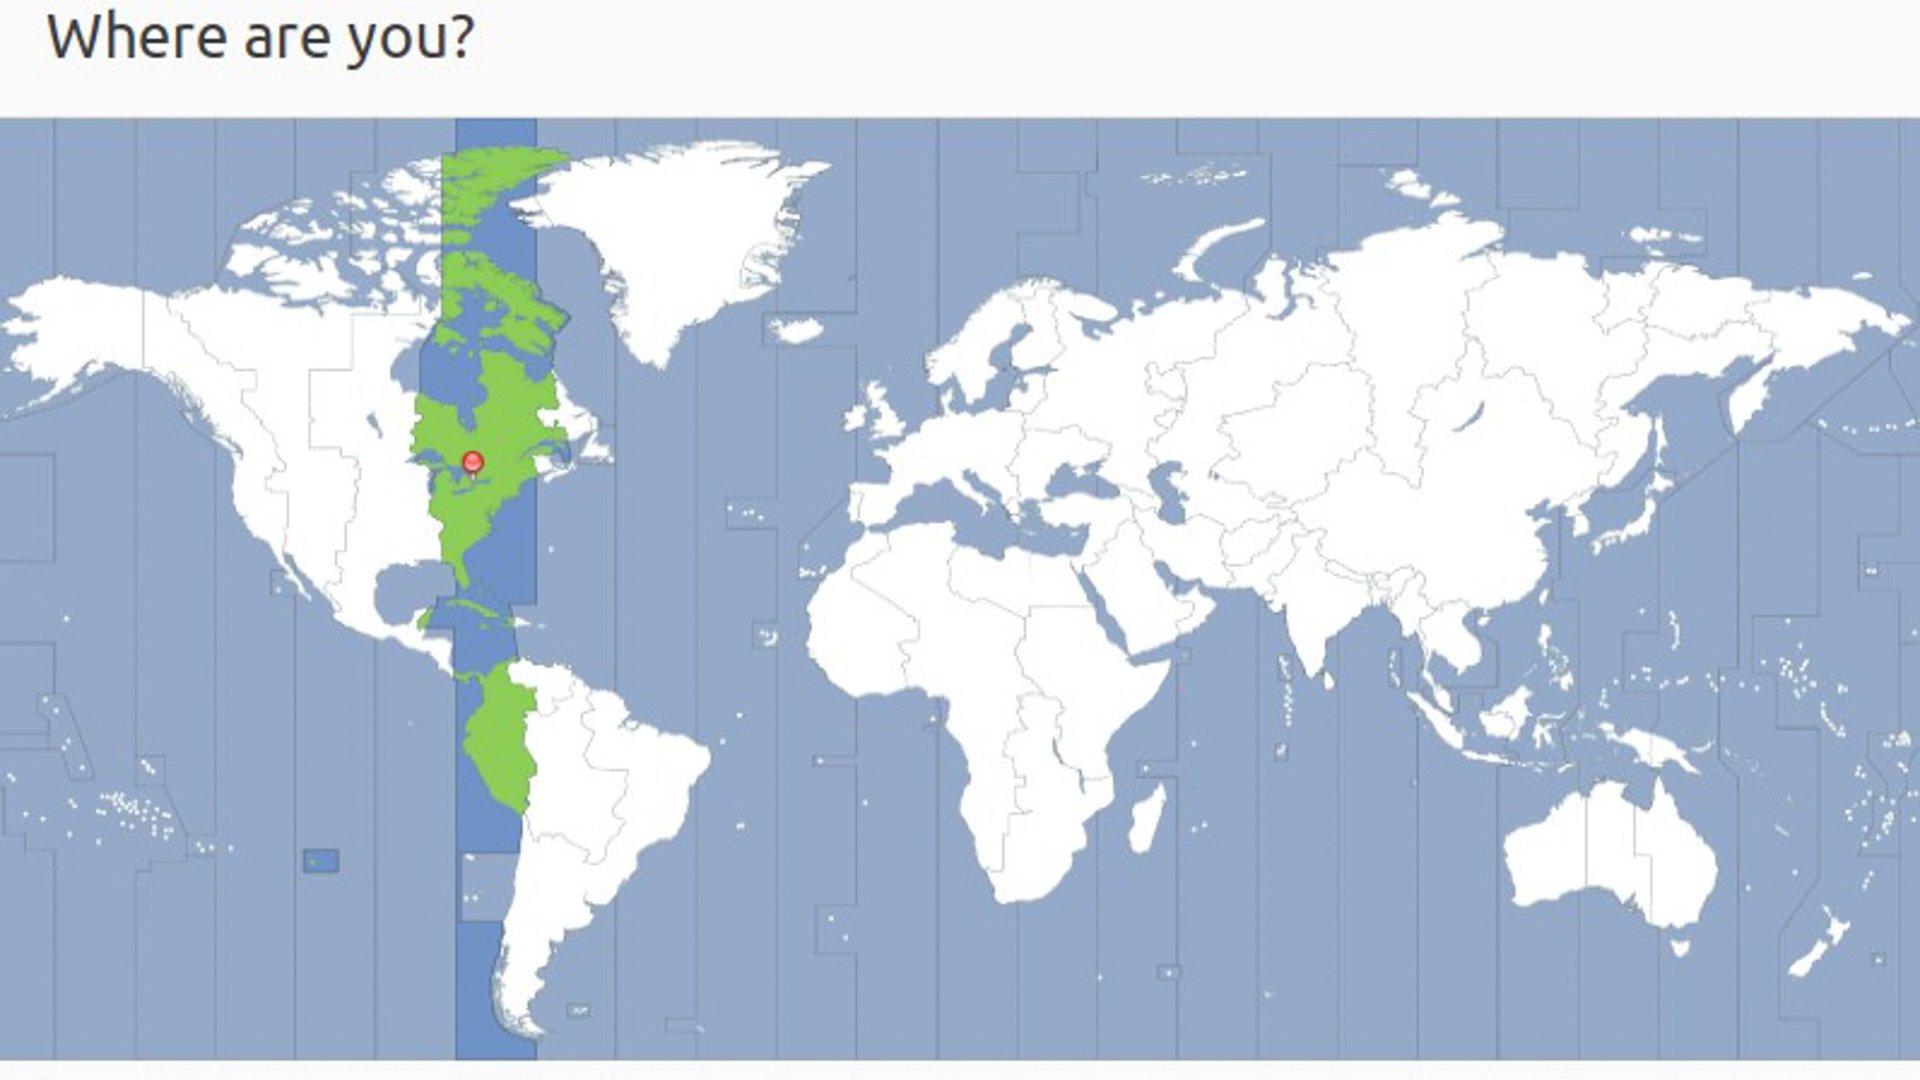 نقشه جهان مسطح با برجسته سبز بر روی بخش زمان استاندارد شرقی آمریکای شمالی